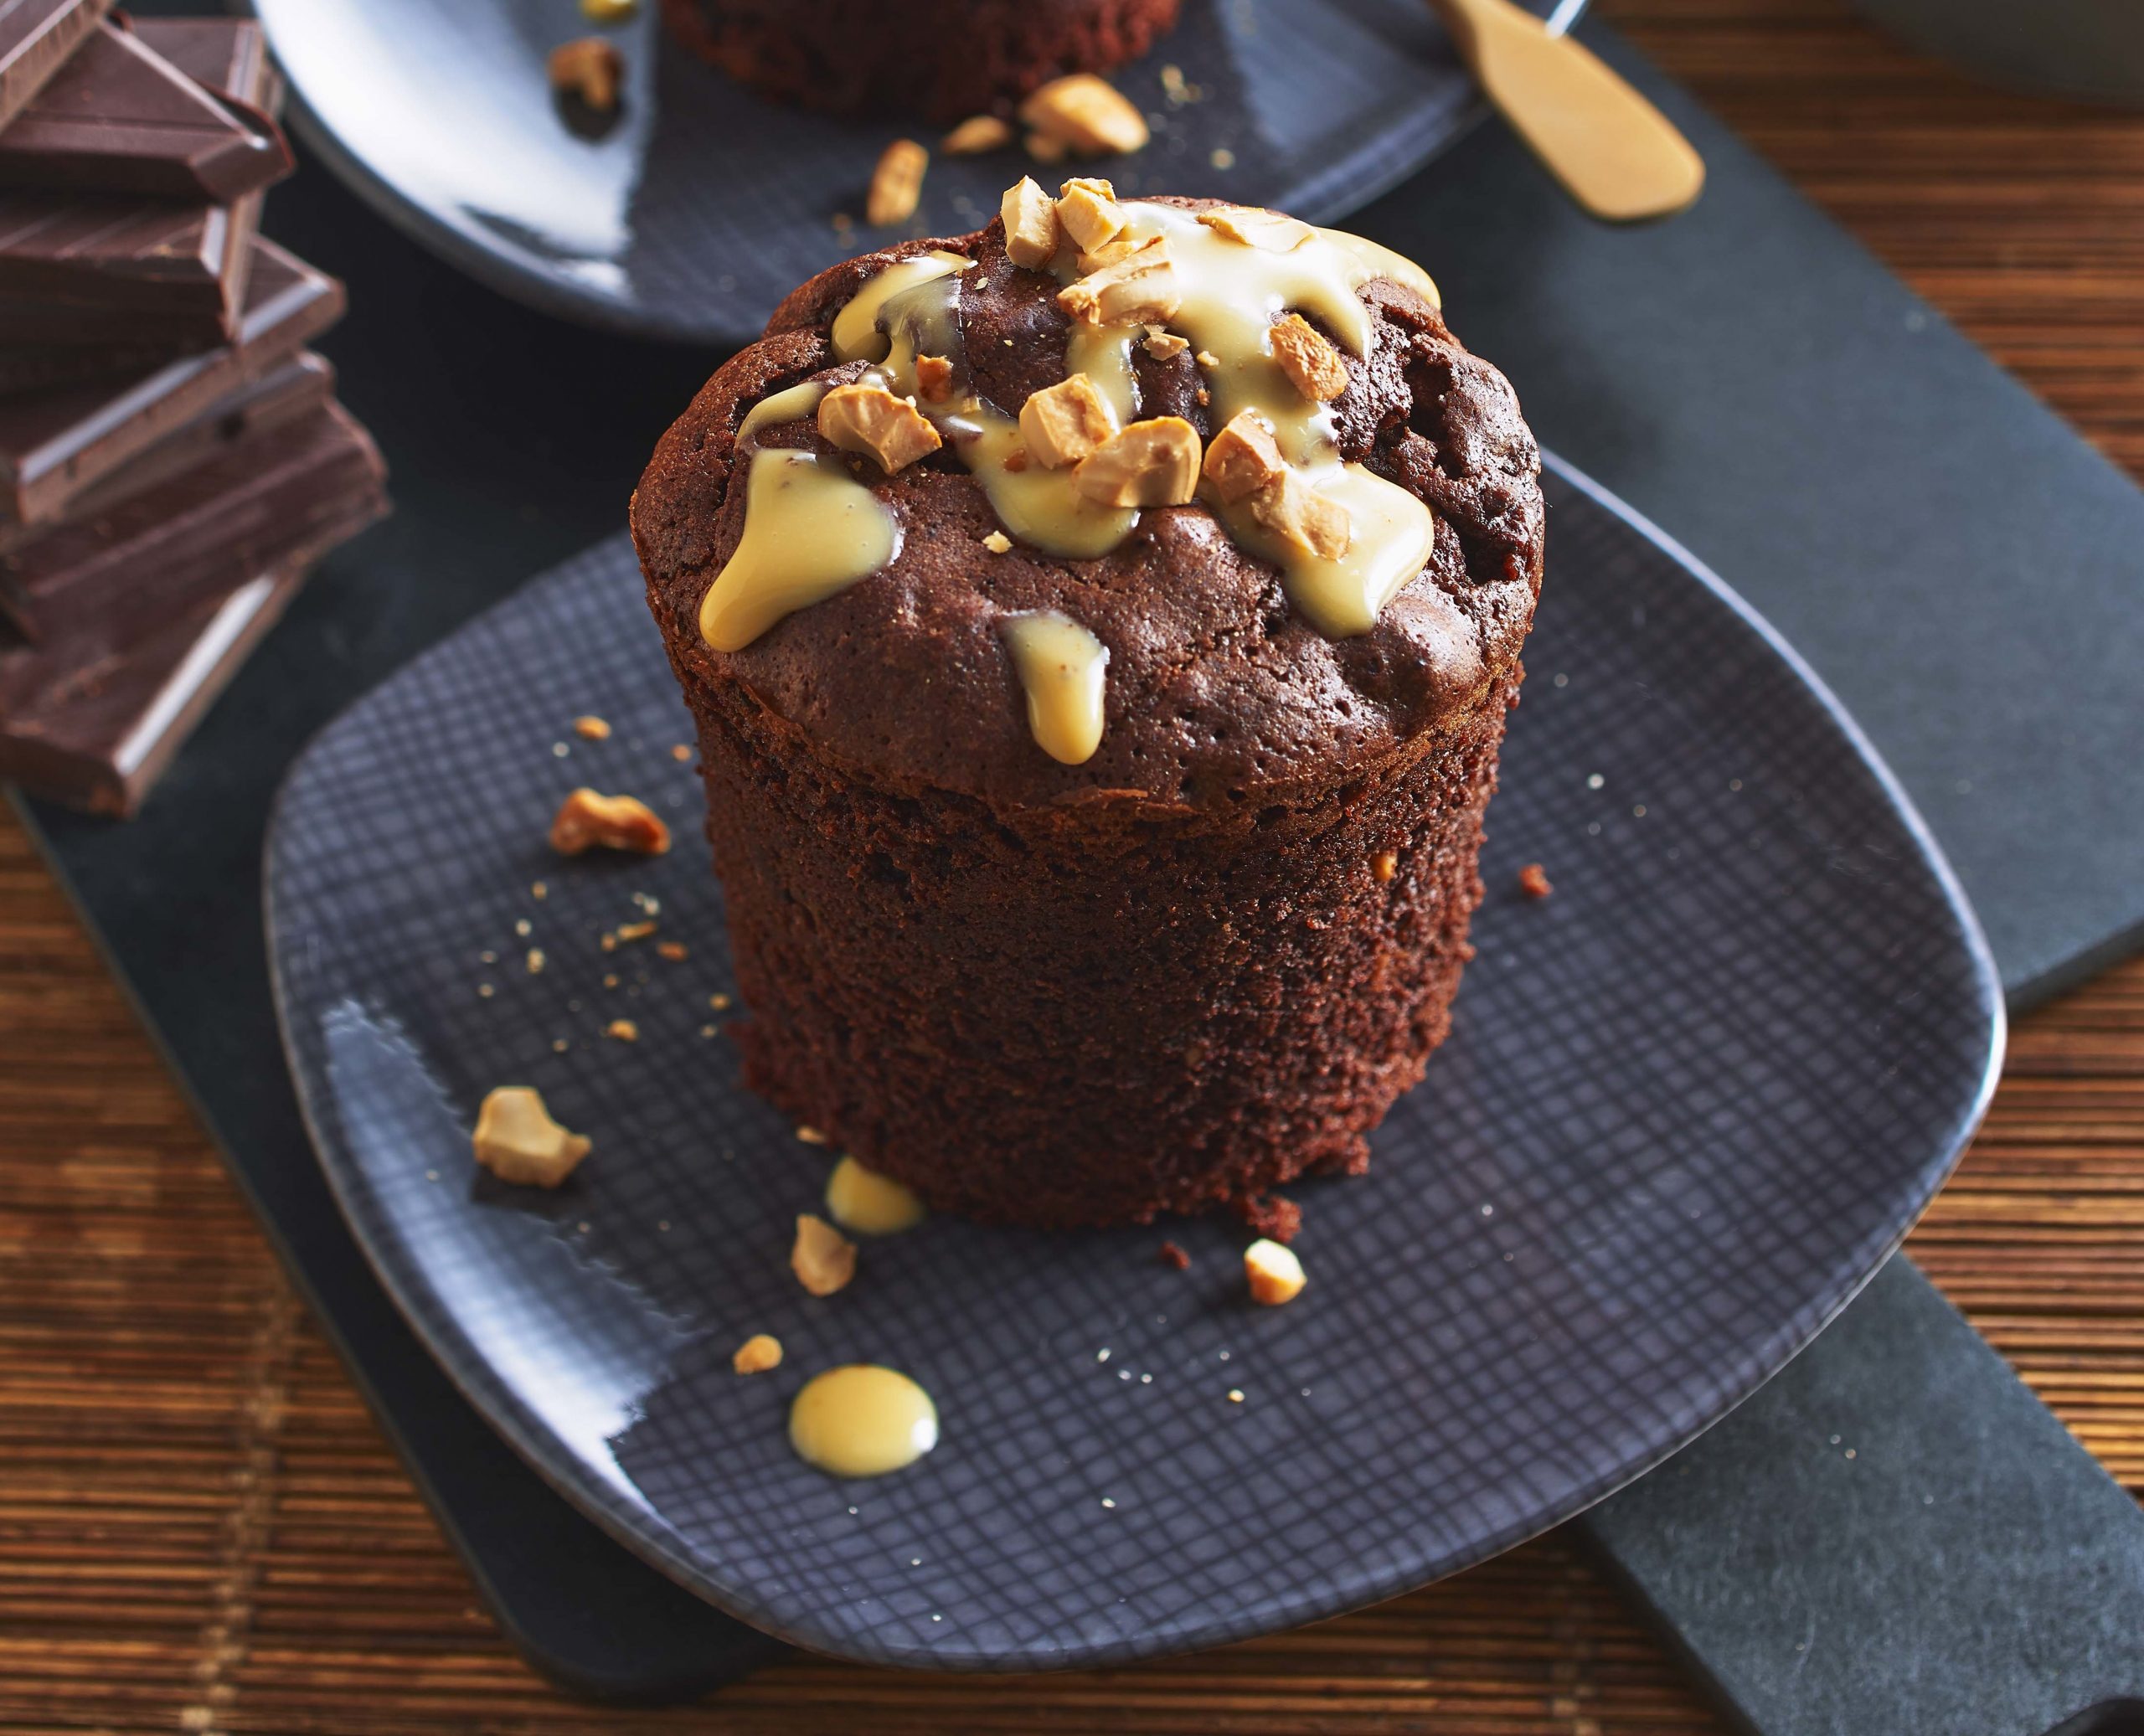 Dunkle Schokolade lässt sich prima mit Zucchini kombinieren und daraus saftige Brownies oder Muffins kreieren. So geht Food-Pairing.